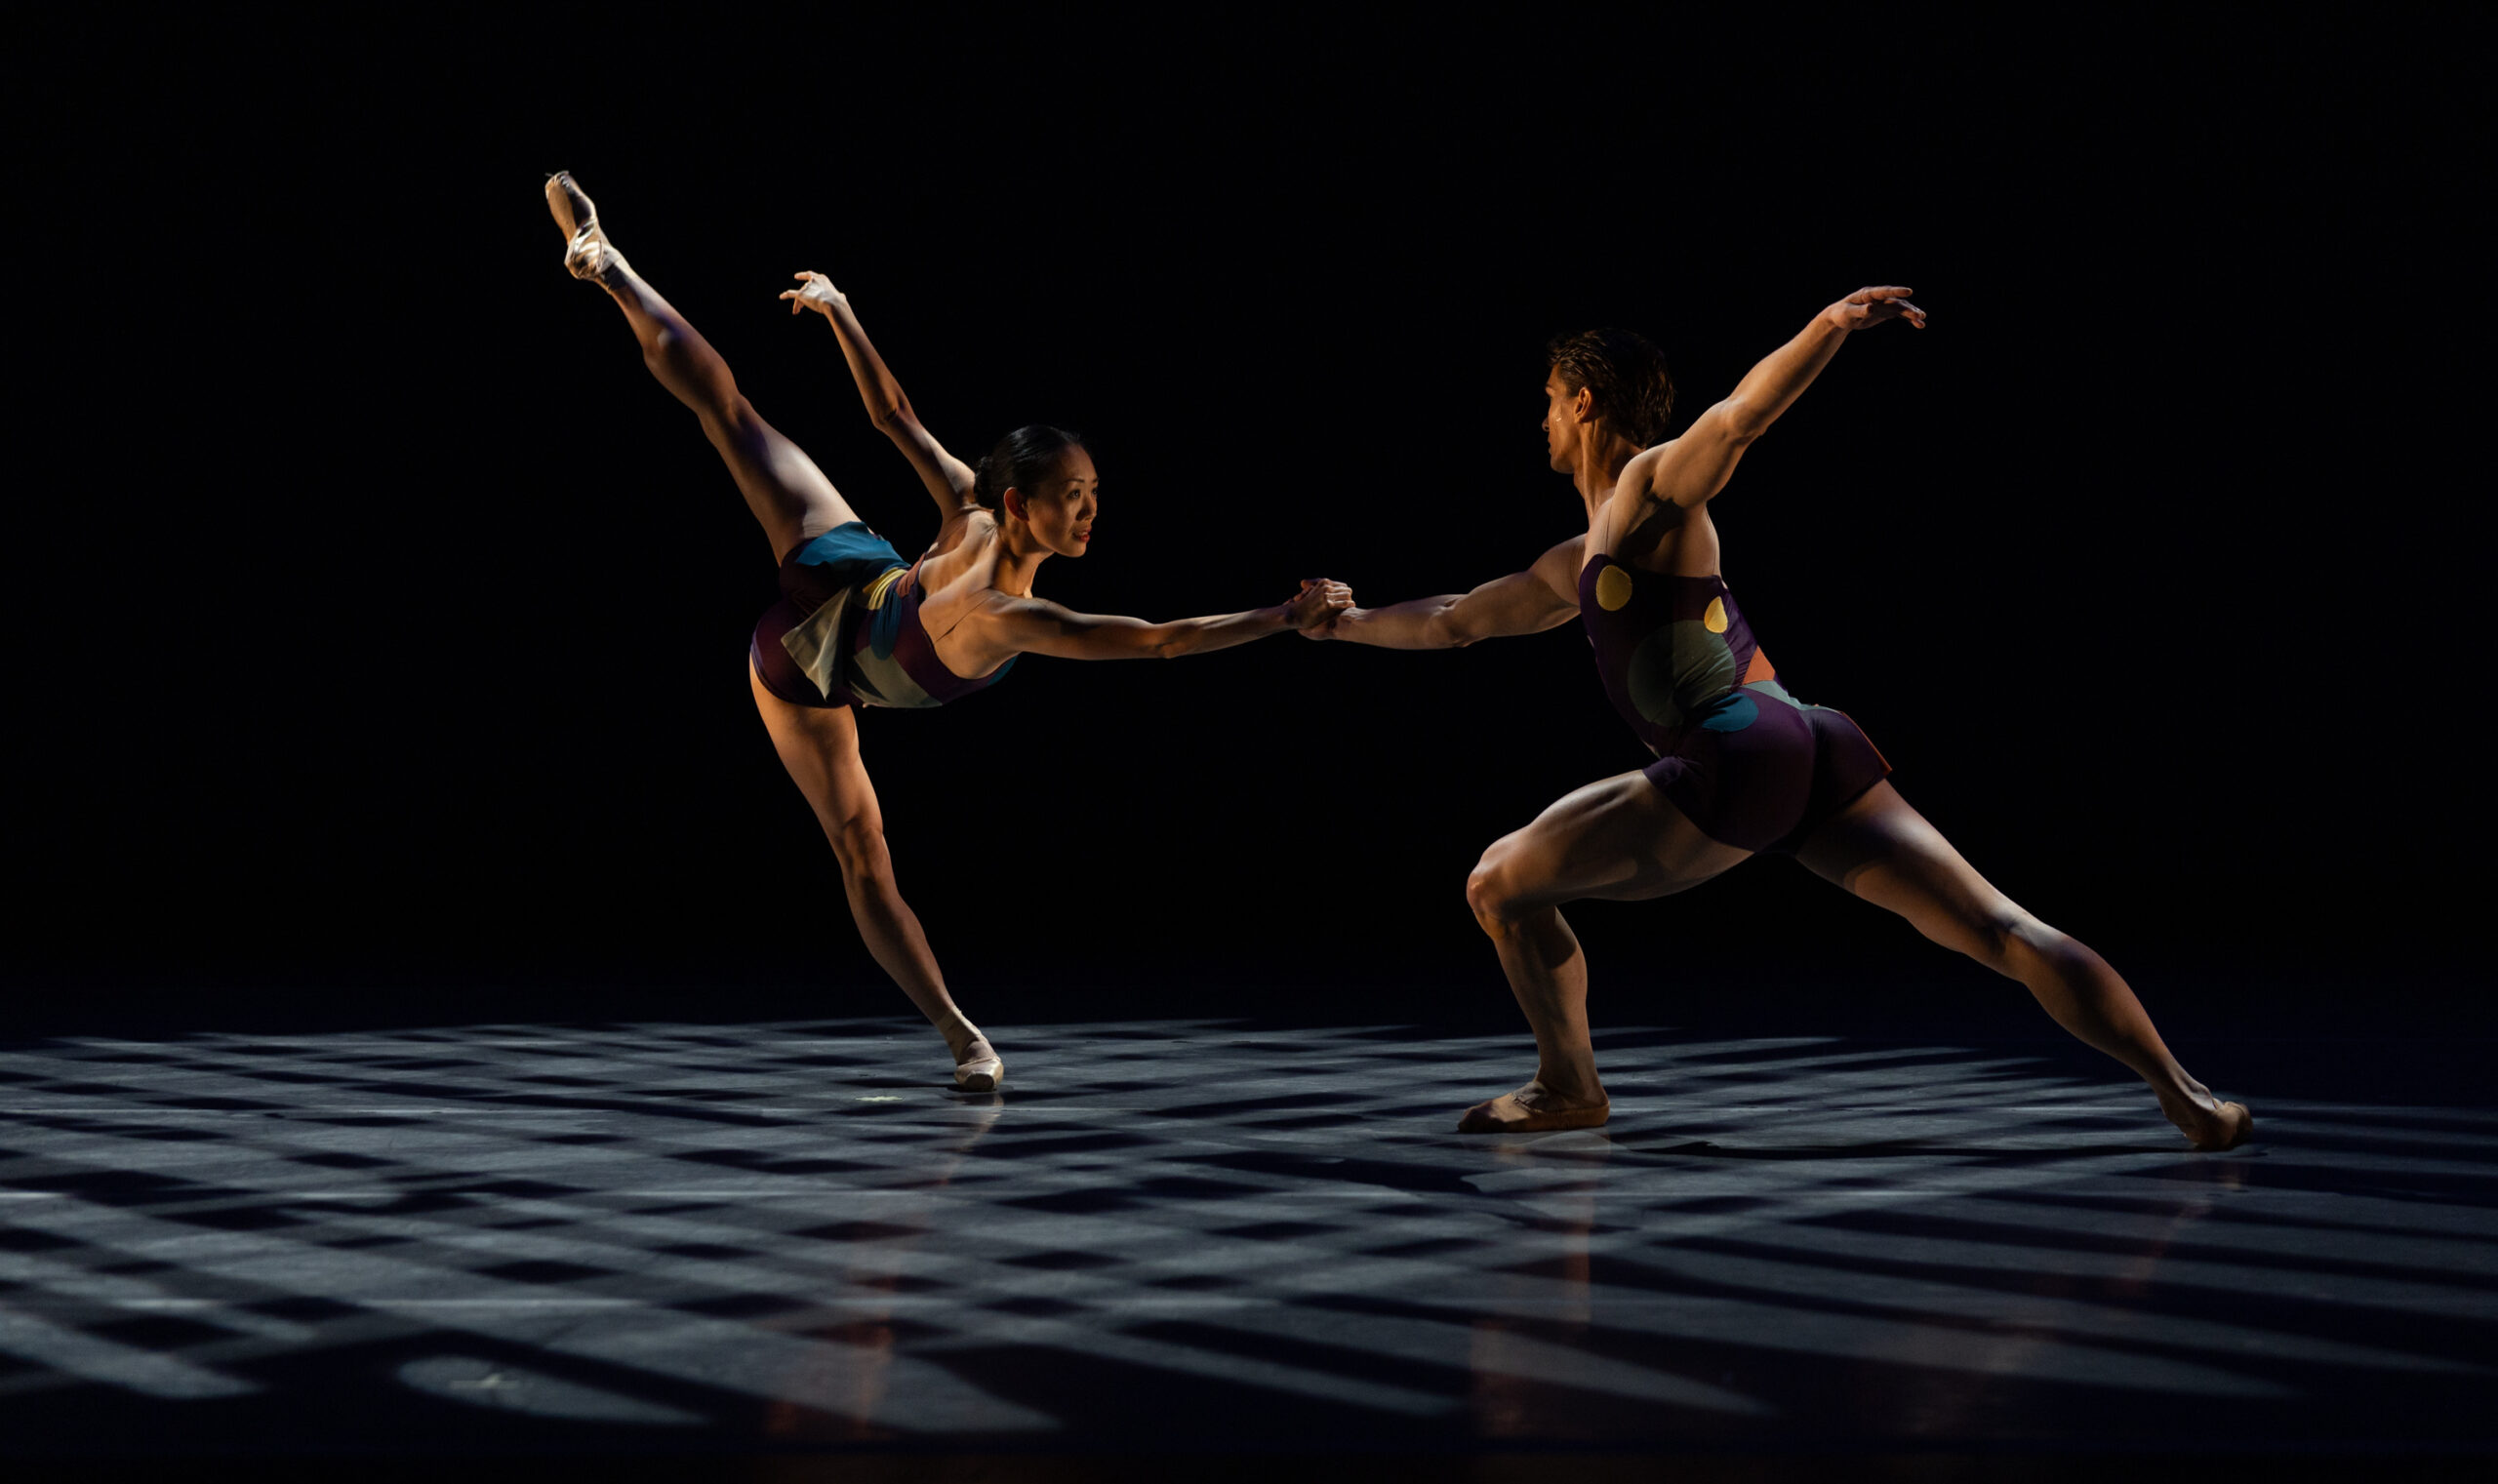 Santa Monica College's Synapse Contemporary Dance Theater to